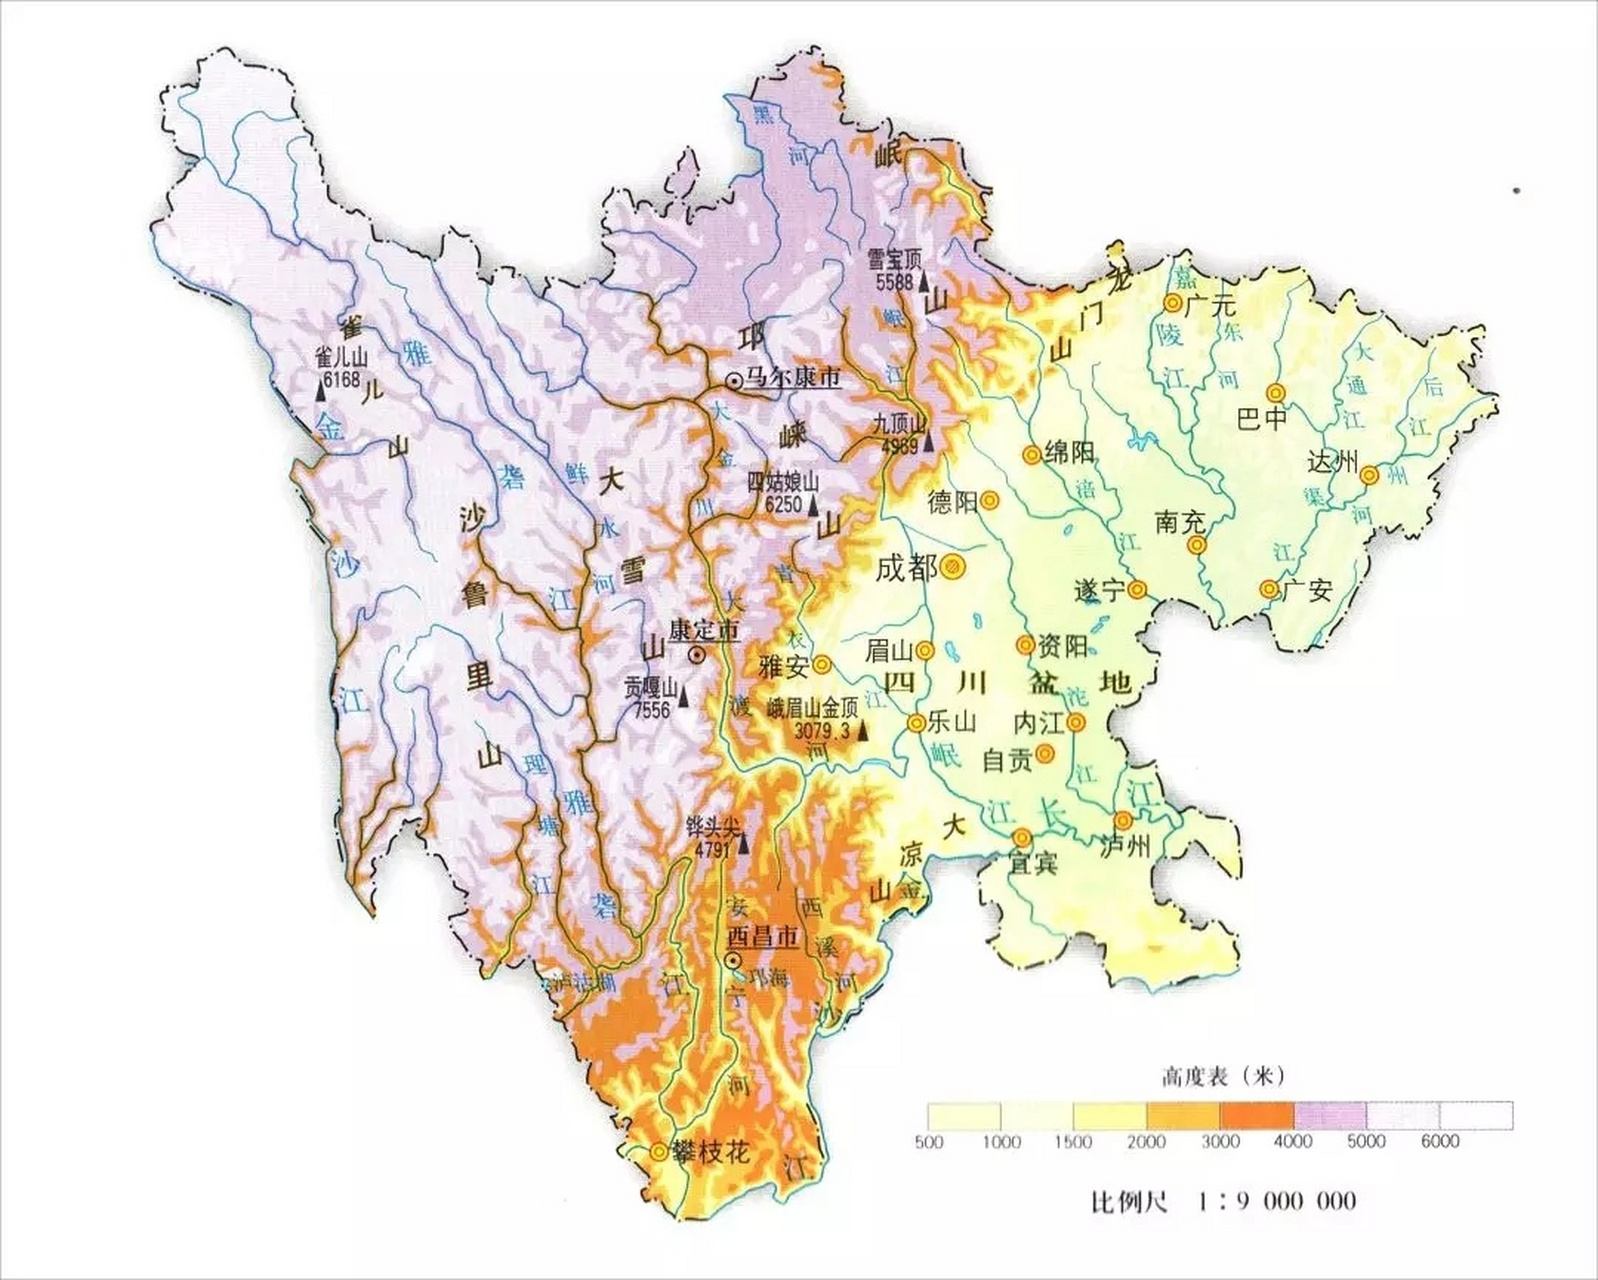 四川省地形图 四川东部地区和西部地区地形差异巨大